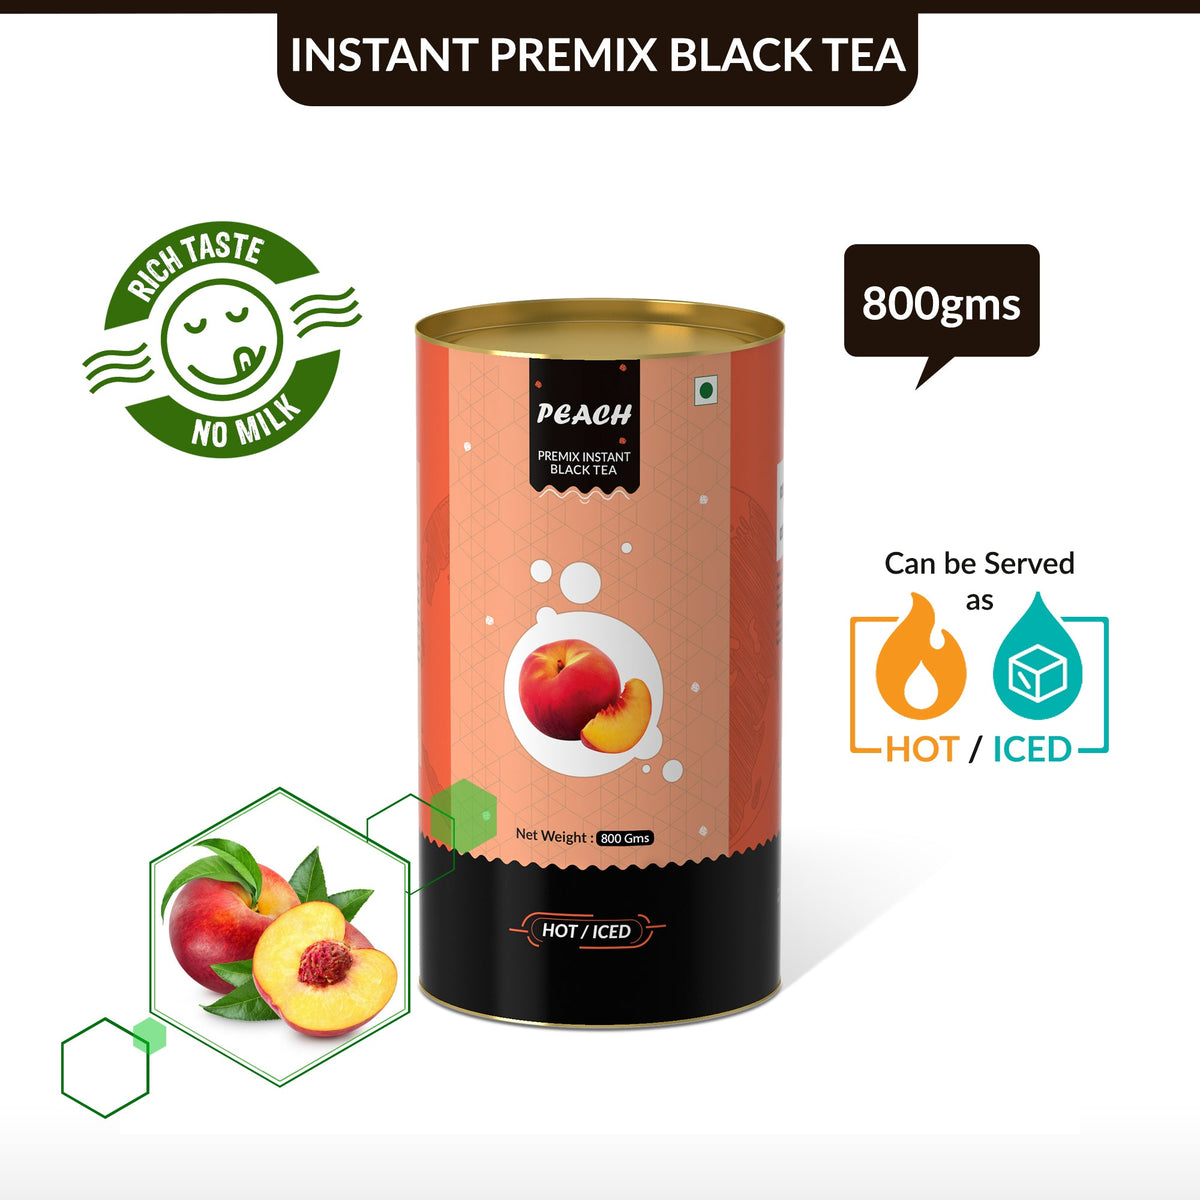 Peach Flavored Instant Black Tea